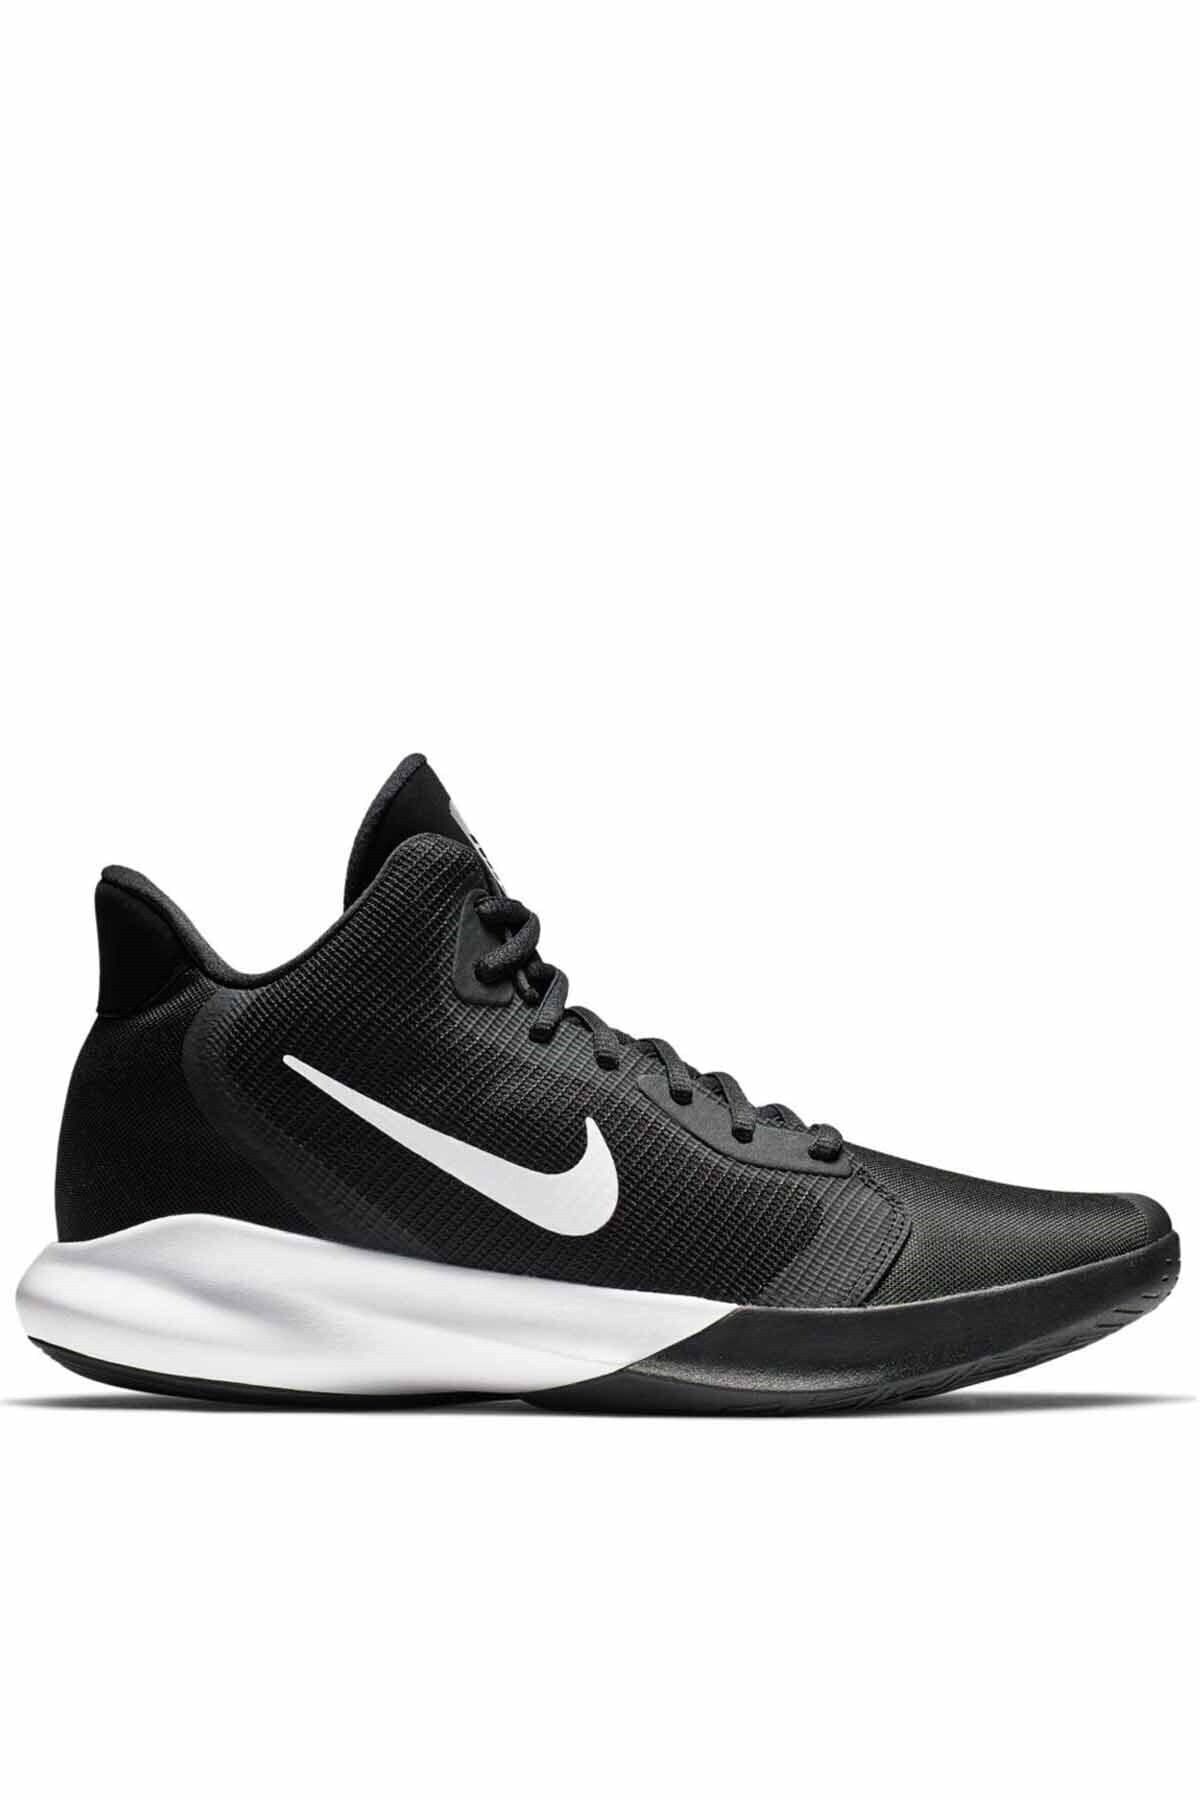 Nike Precısıon Iıı Erkek Basketbol Ayakkabı Aq7495-002